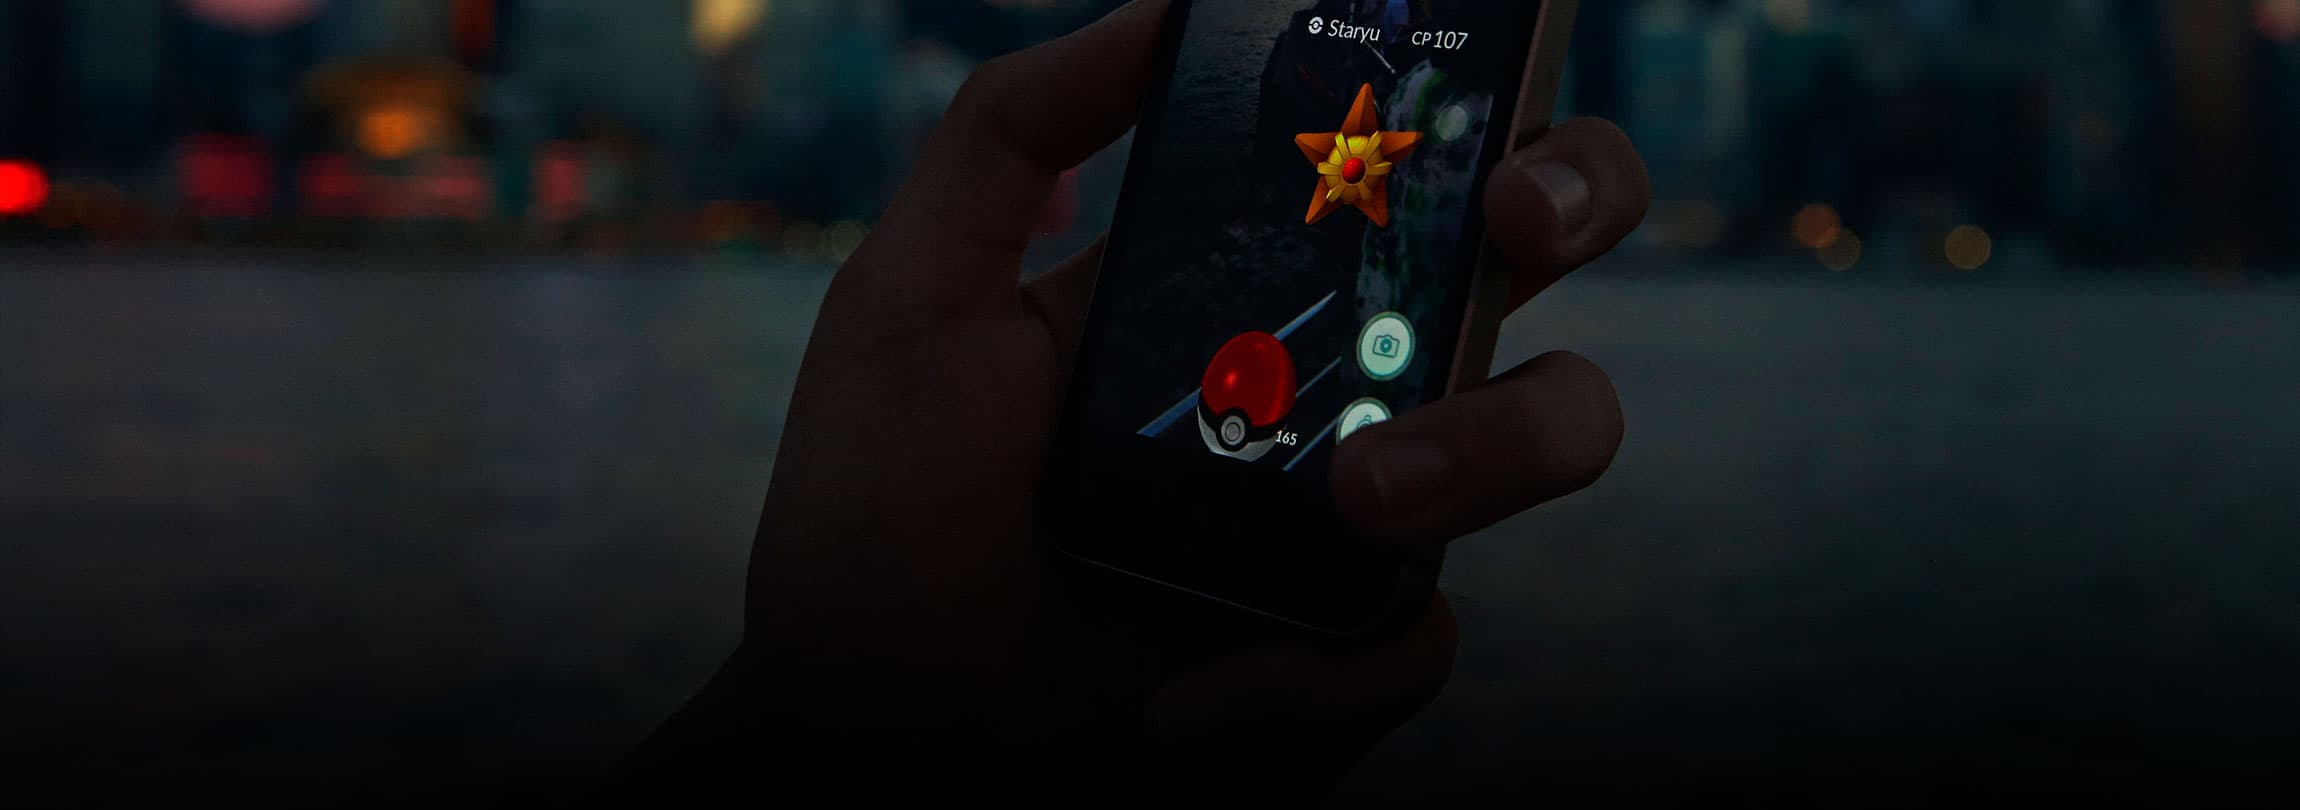 Existe algum problema com o jogo “Pokémon GO”?